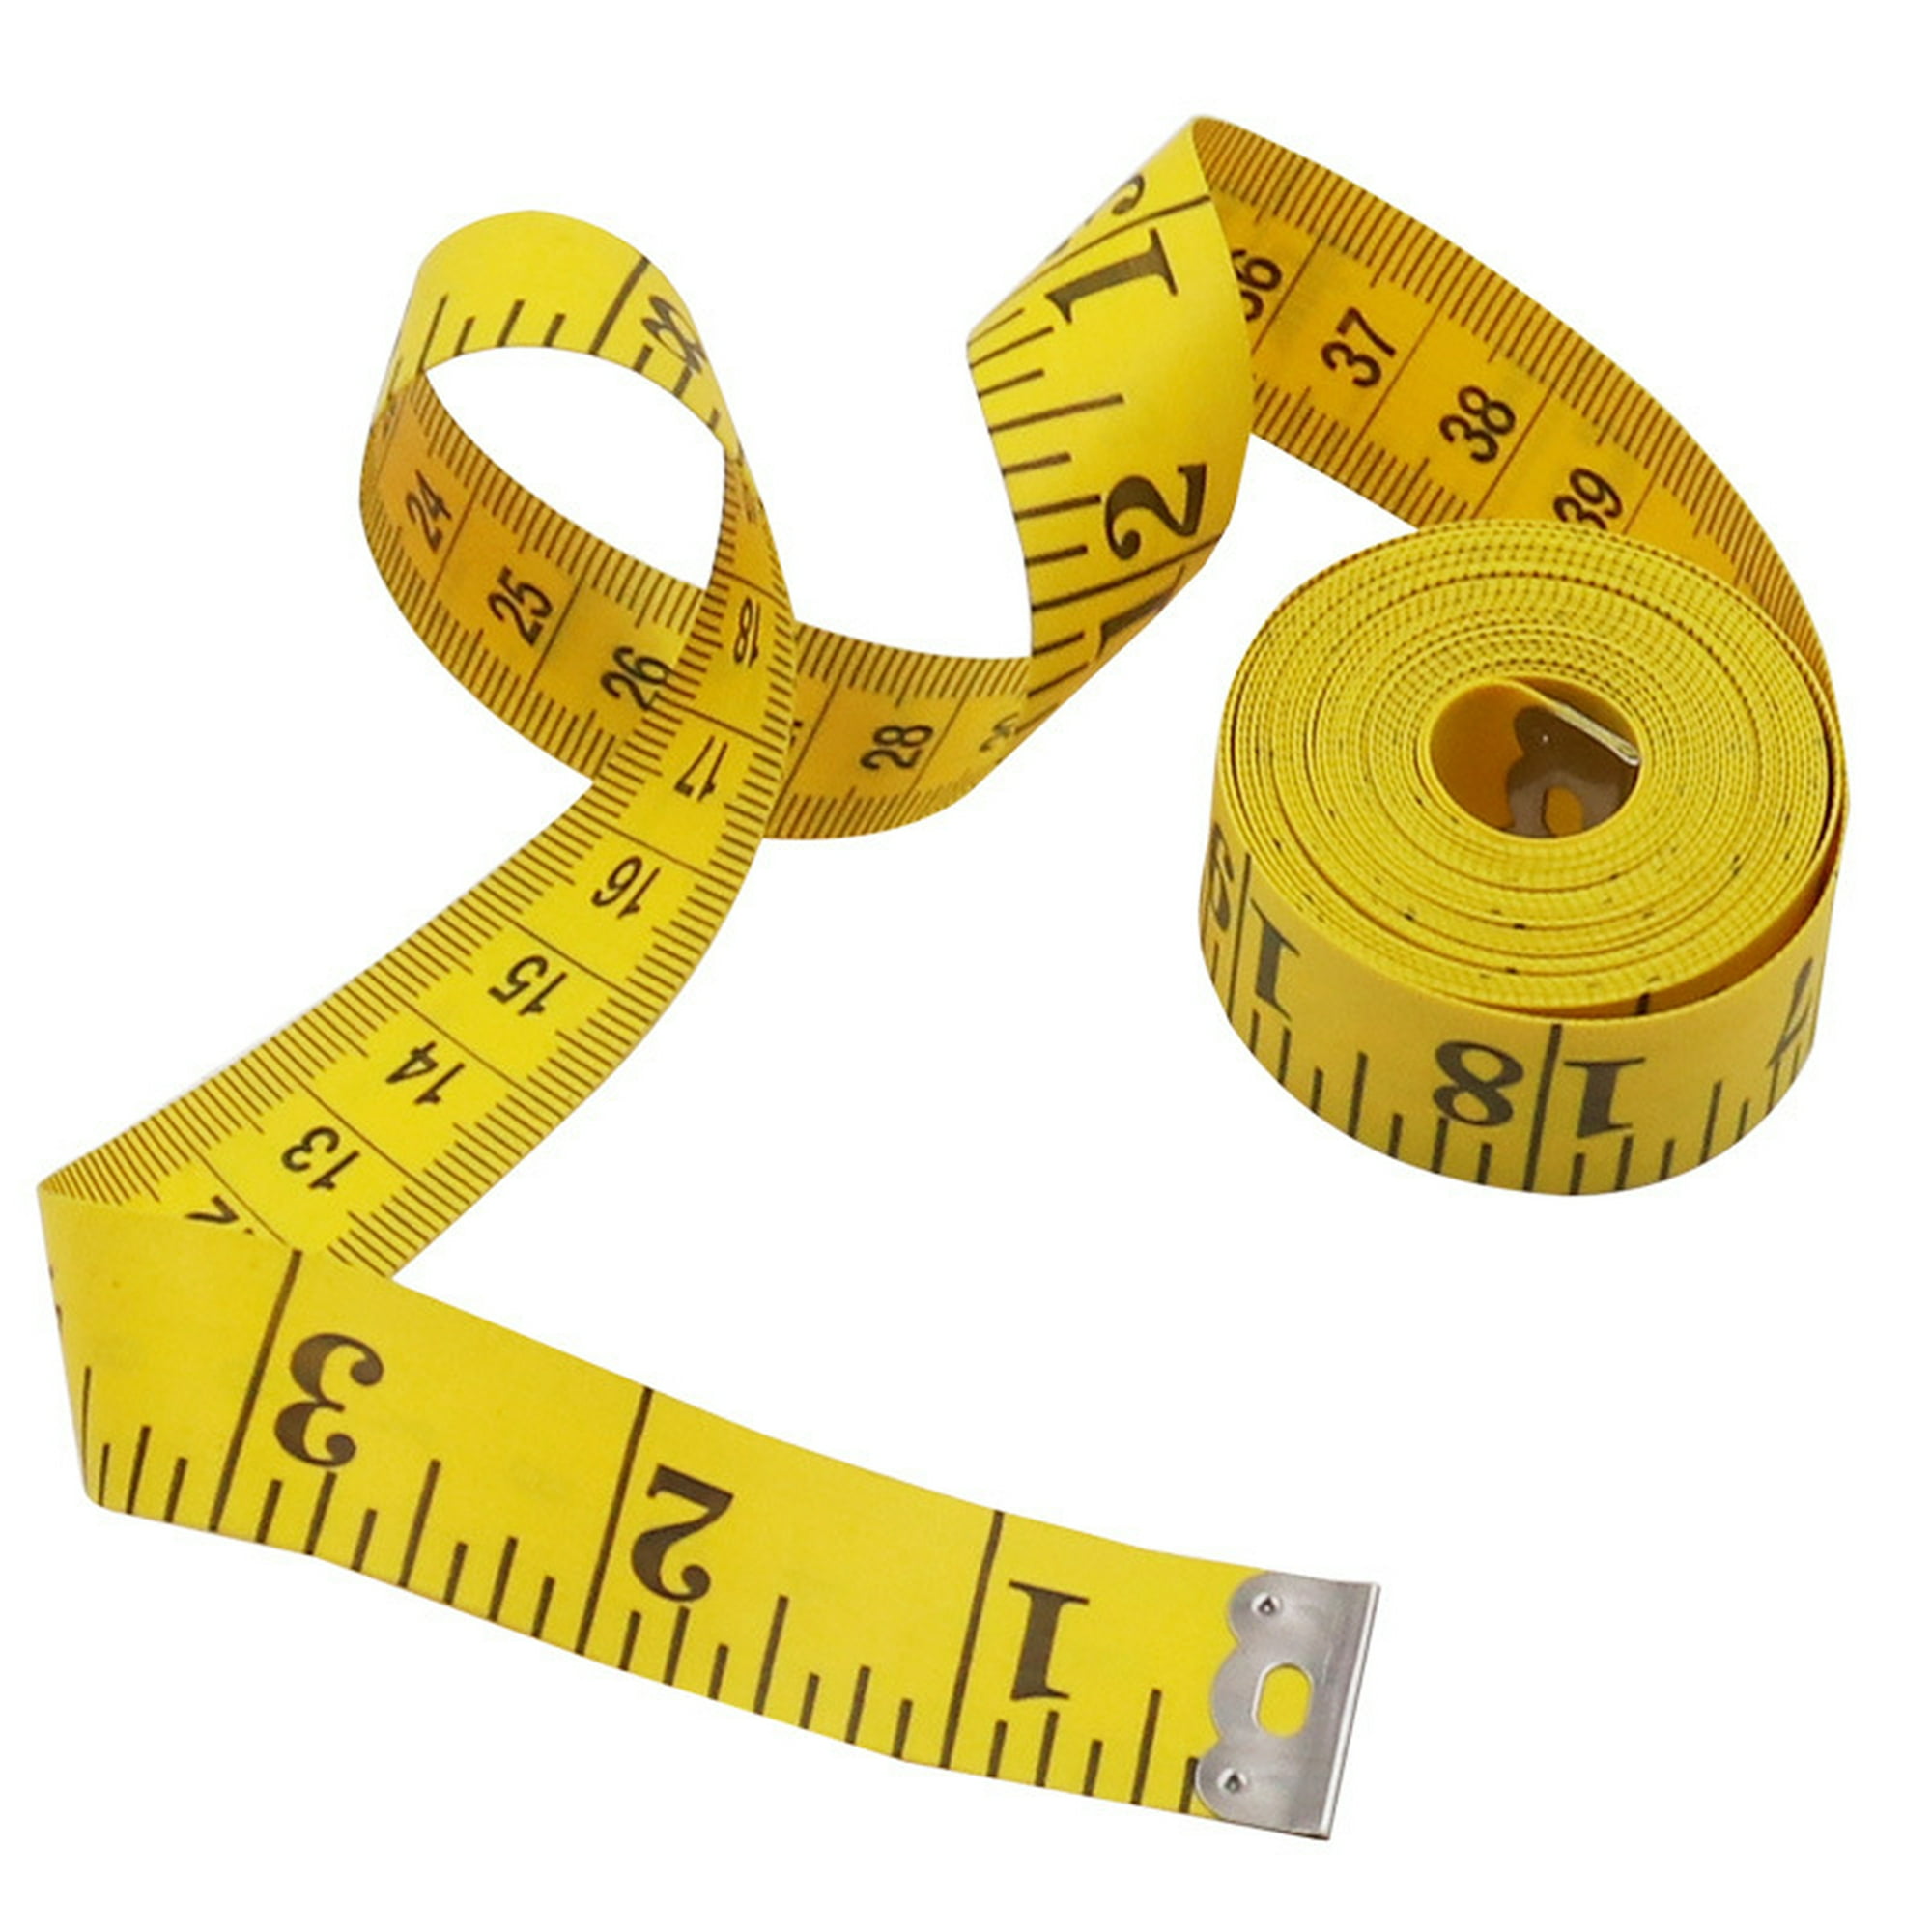 JIANLE Cinta métrica de 2 caras | Adecuado para medir el cuerpo | Cinta de  coser | Pulgadas y Cms | 118.1 in | 120 pulgadas | (blanco, amarillo)